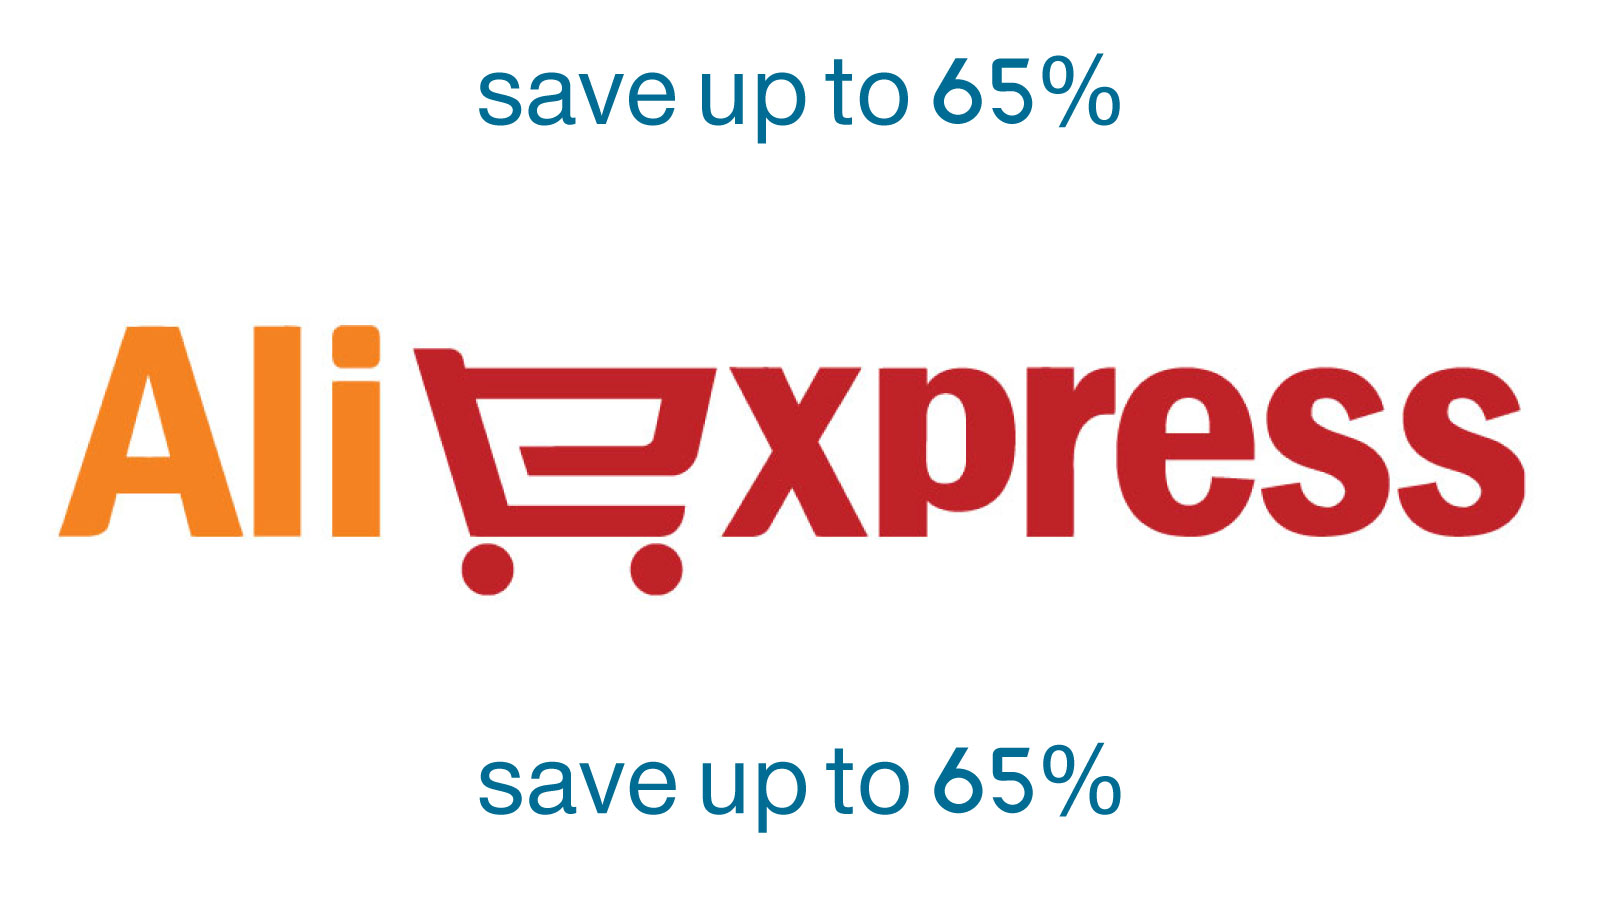 aliexpress.com logo